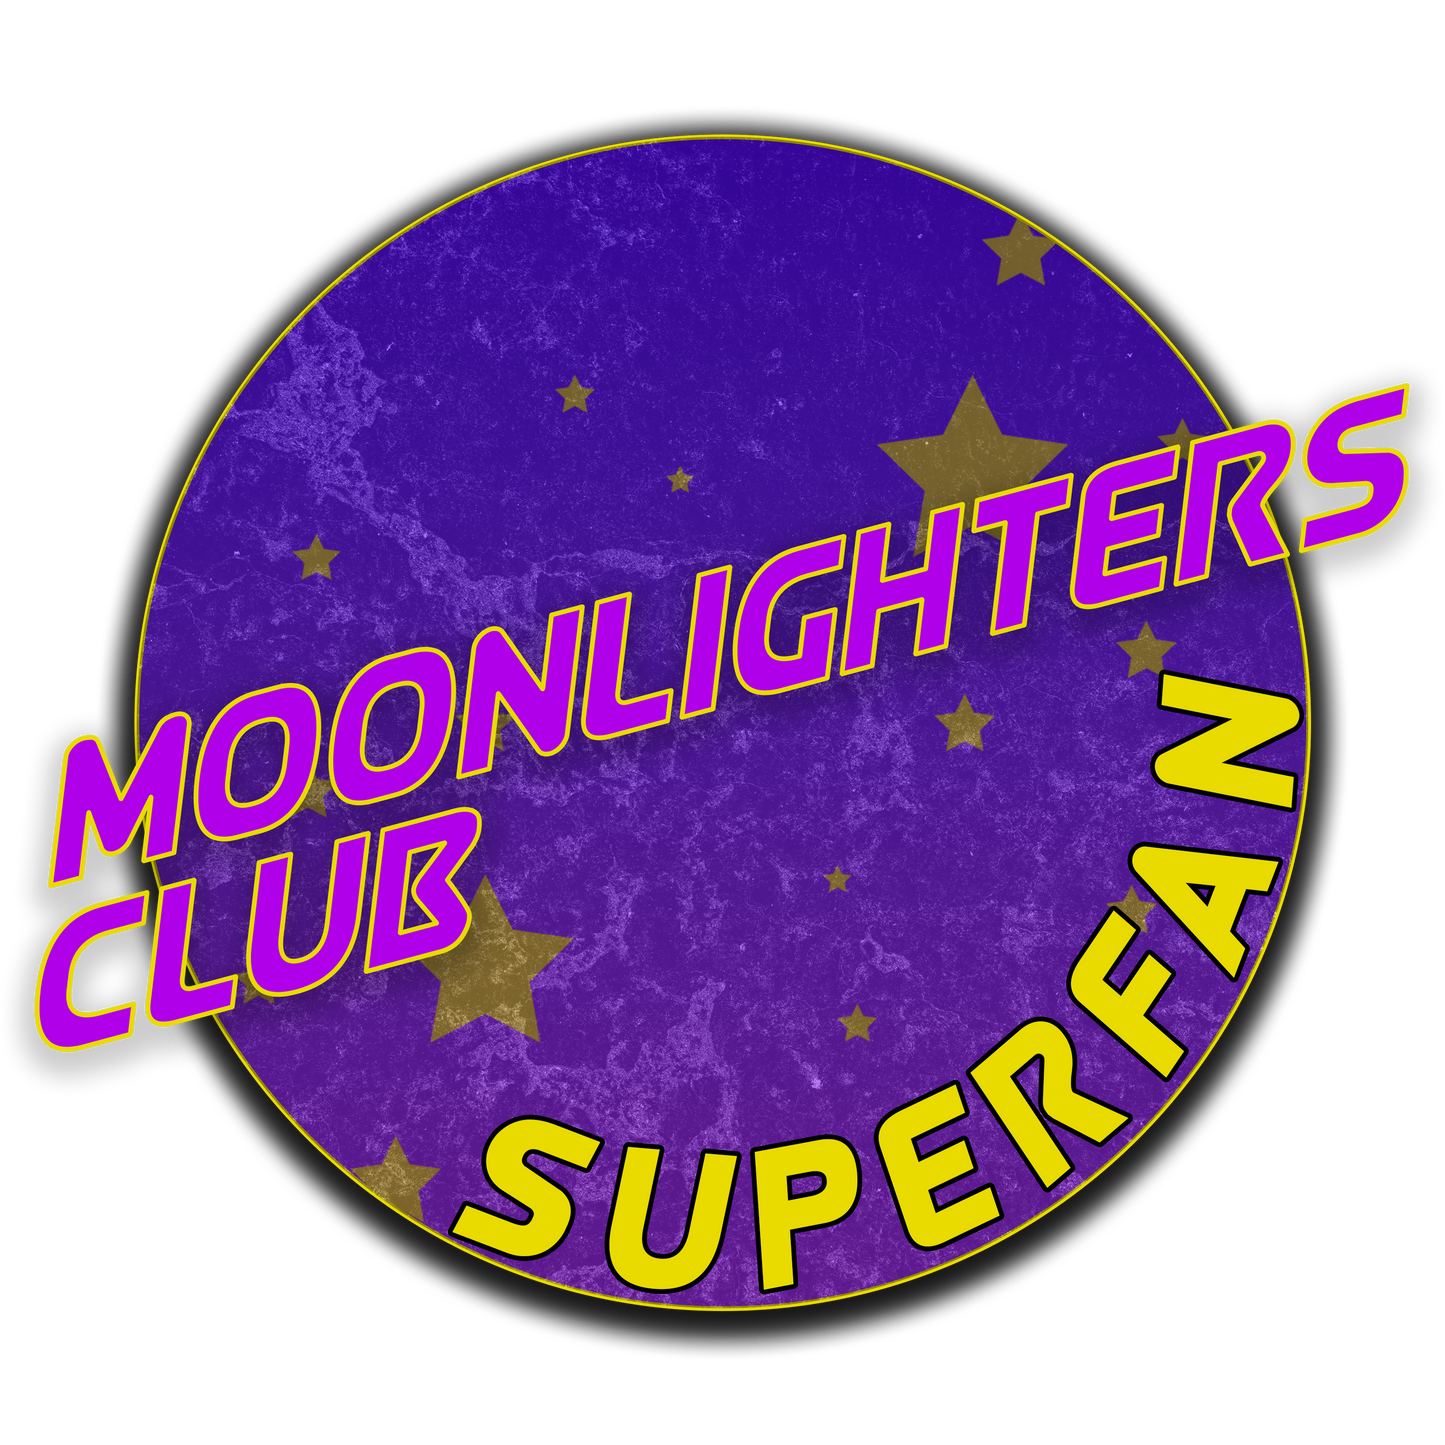 Moonlighters Club (Superfan)